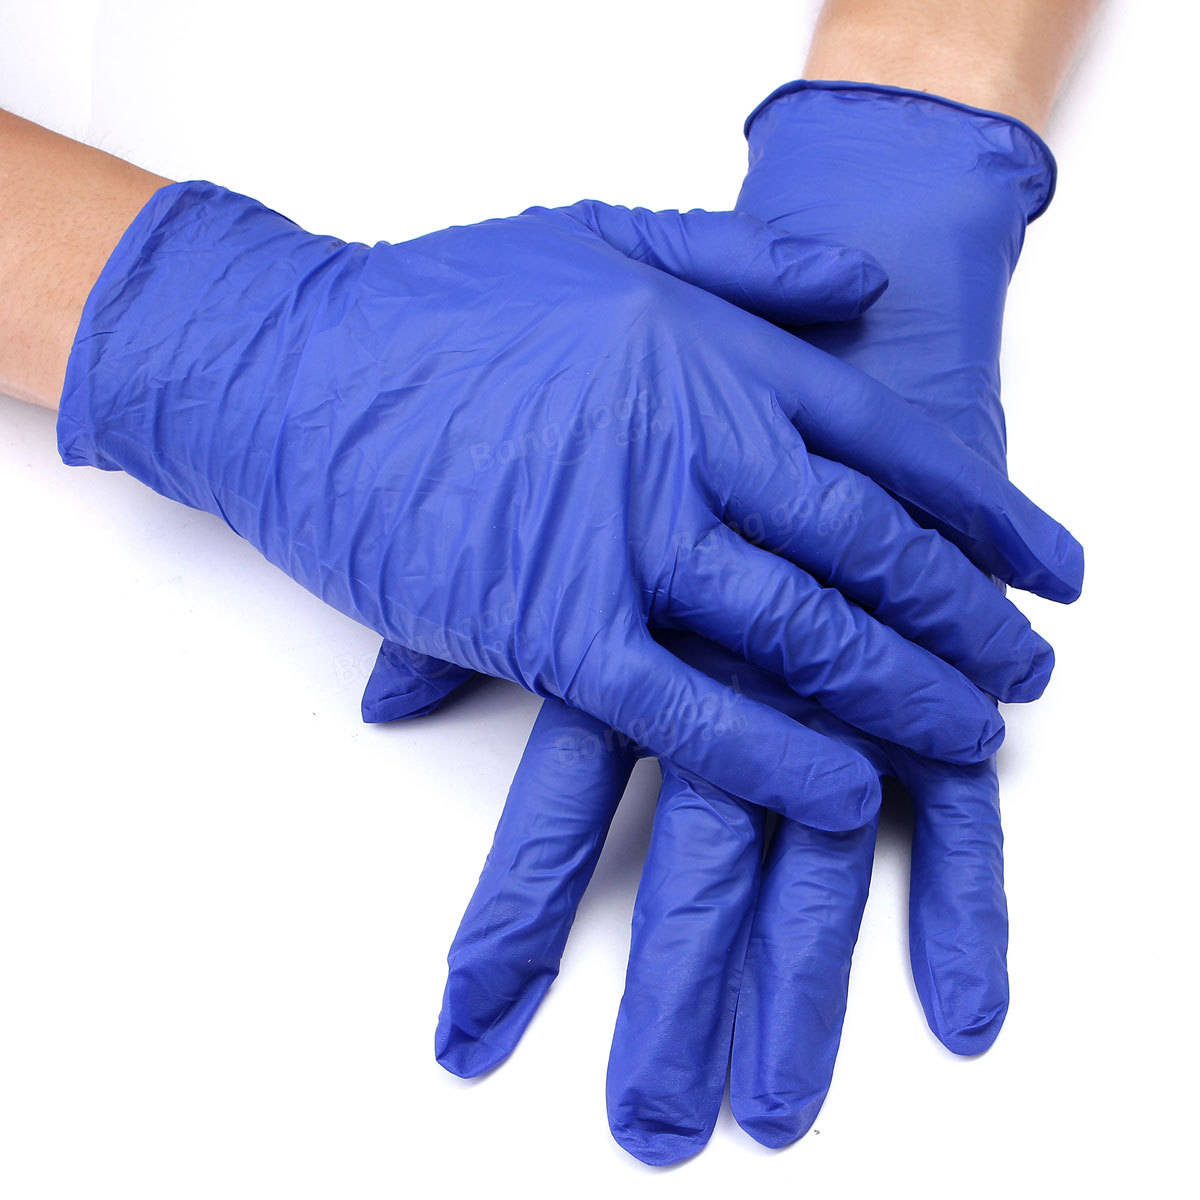 Купить медицинские латексные перчатки. Перчатки нитриловые connect Blue Nitrile. Basic Medical перчатки латексные неопудренные. Nitrile Gloves перчатки. Перчатки нитриловые смотровые Disposable Gloves.